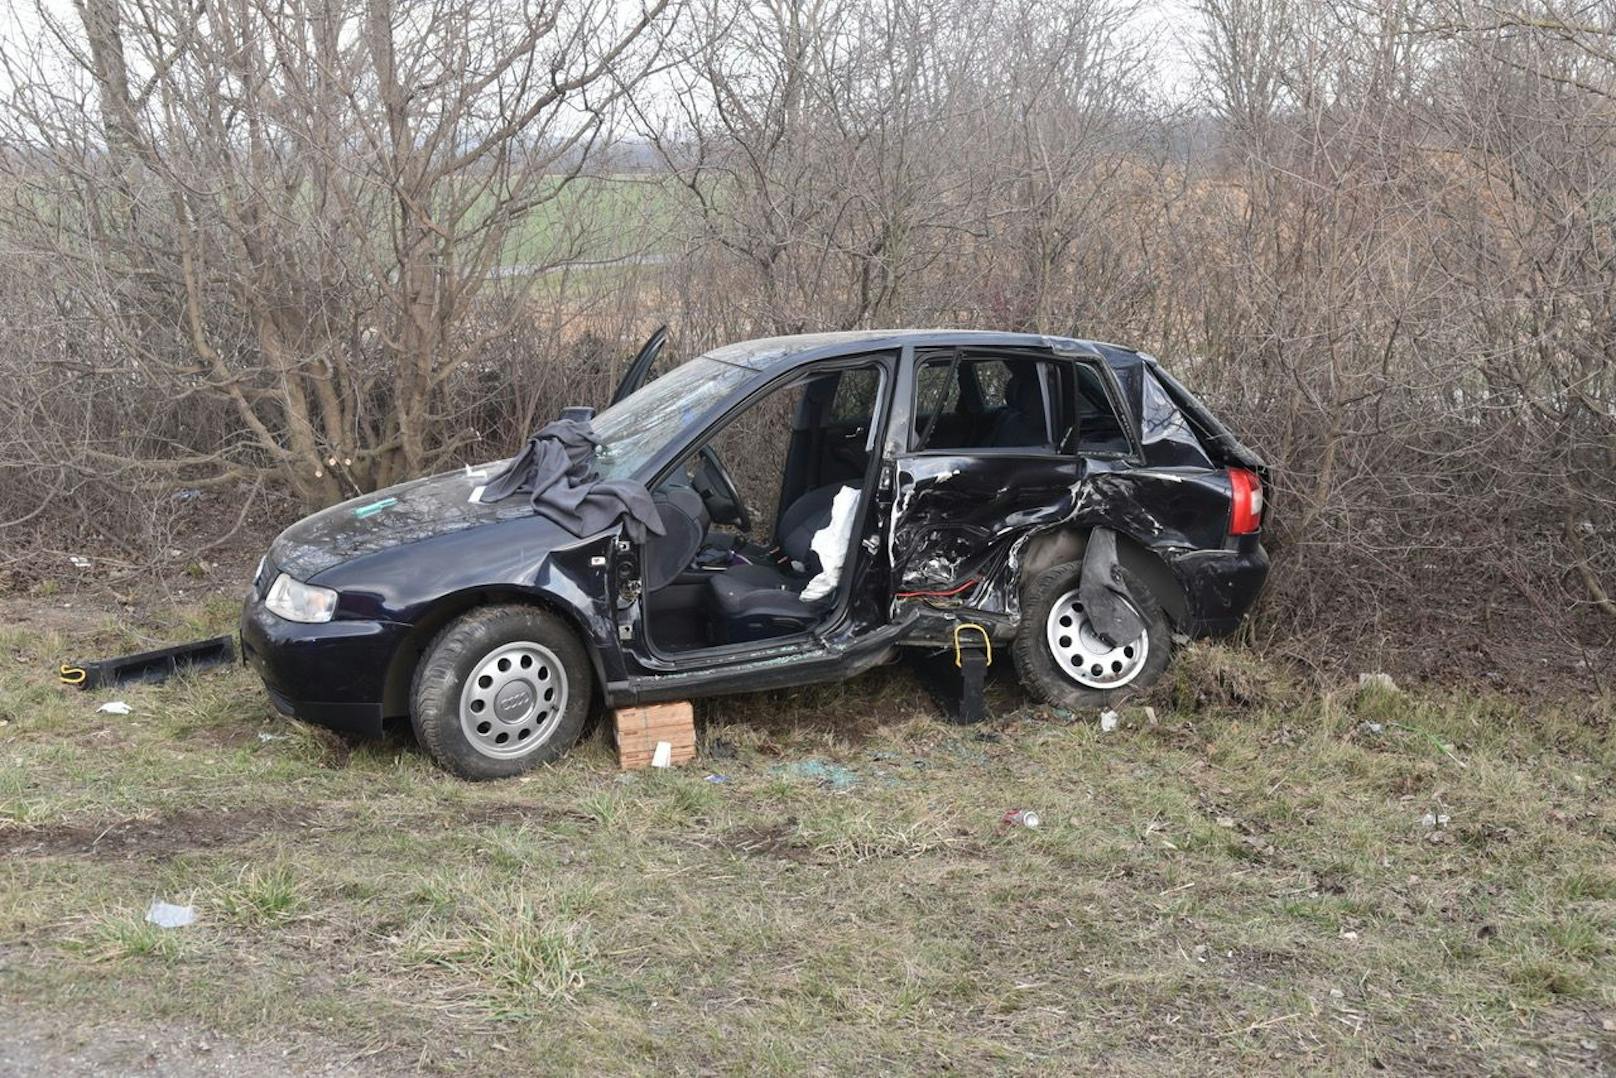 22-Jährige überholt Rettungswagen und kracht in Audi